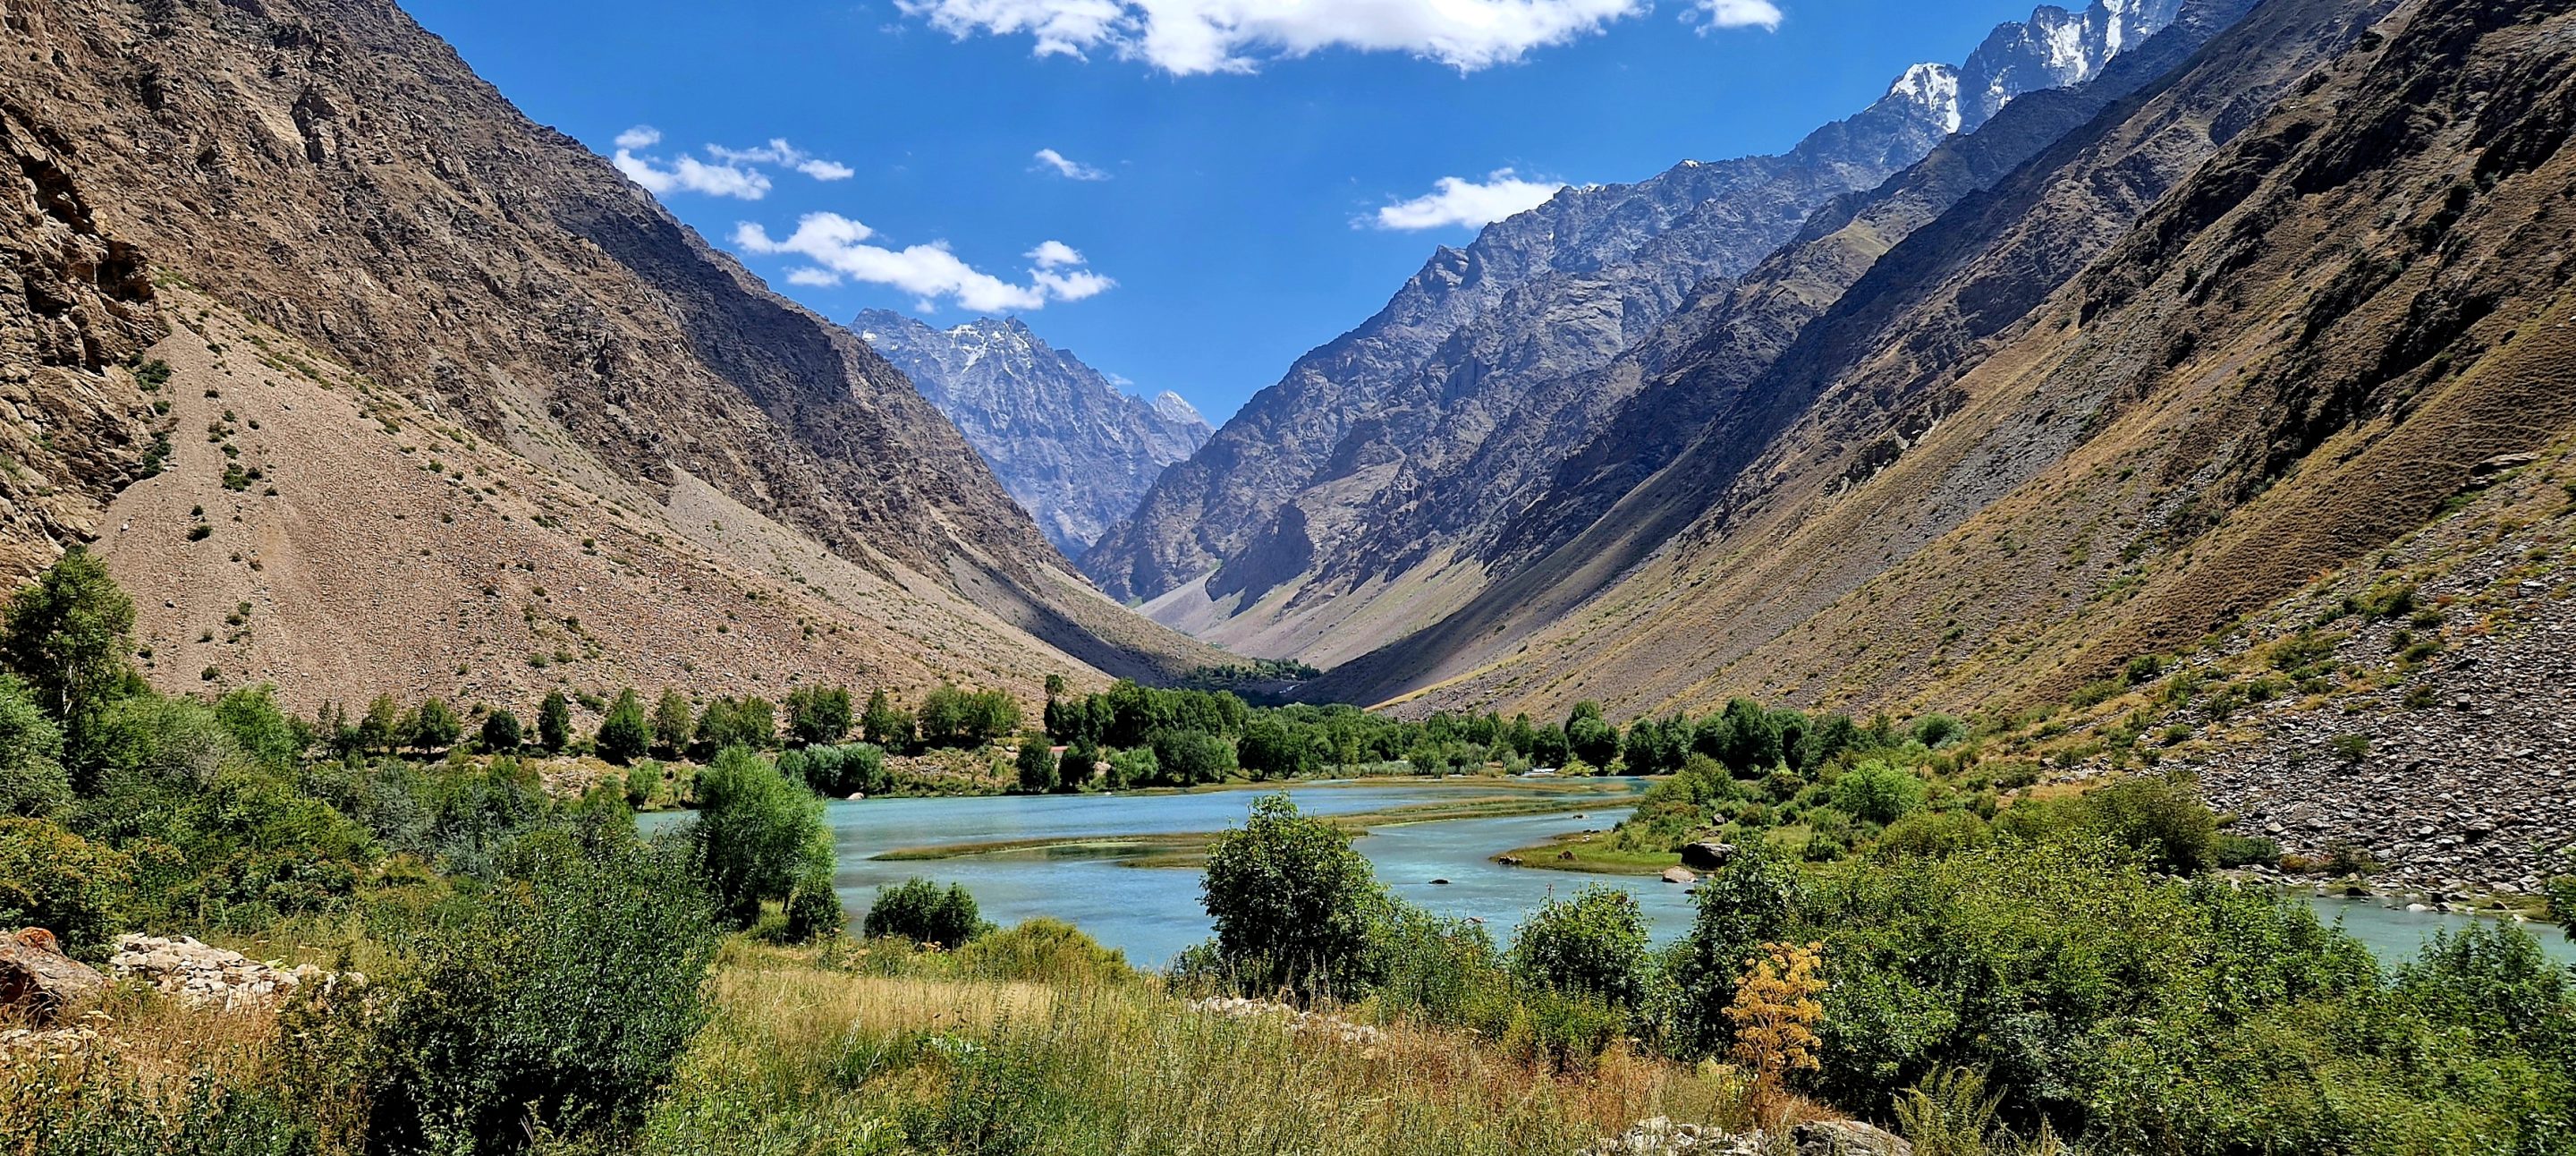 Jizev hike wandeling Pamir Mountains Tadzjikistan